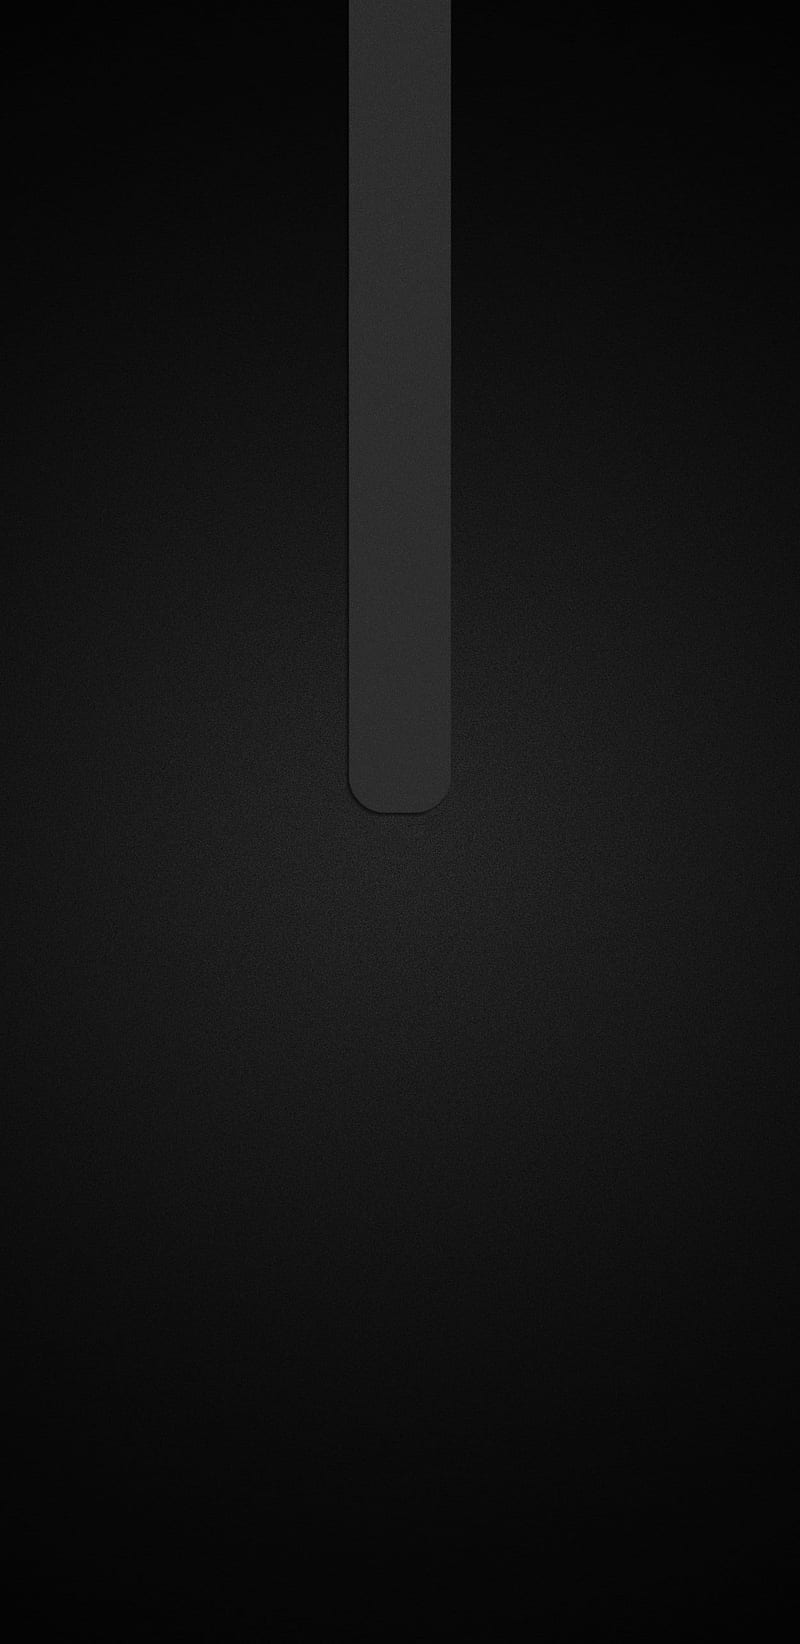 Grey Simple Minimal, bar, black, dark, minimalism, minimalist, HD phone wallpaper